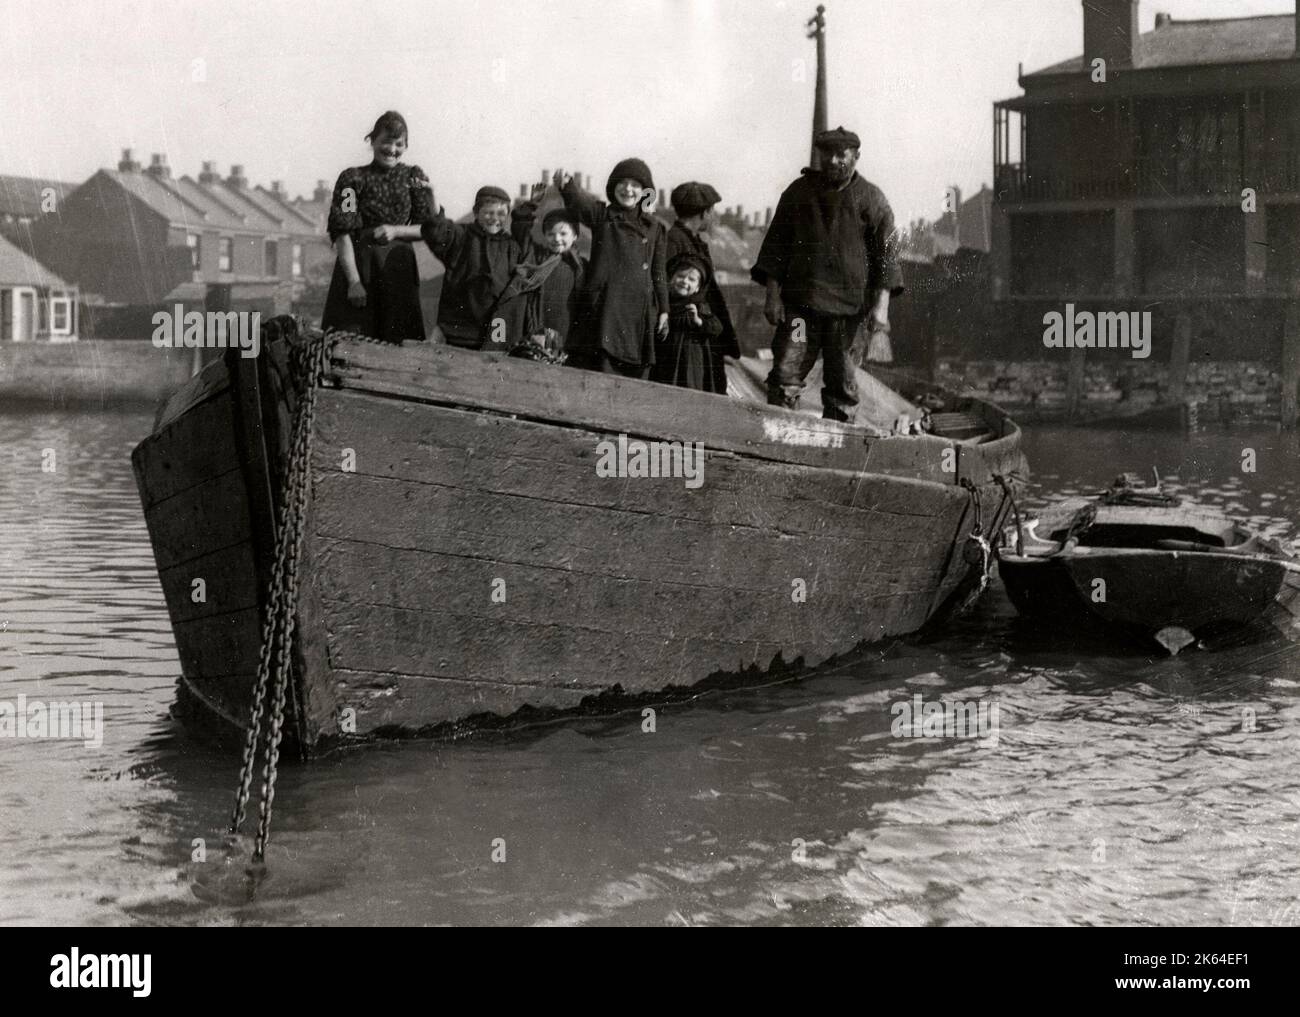 Fotografia stampa vintage dei primi anni del 20th° secolo - vita familiare a bordo di una barca, storia sociale, povertà, Inghilterra, 1920s Foto Stock